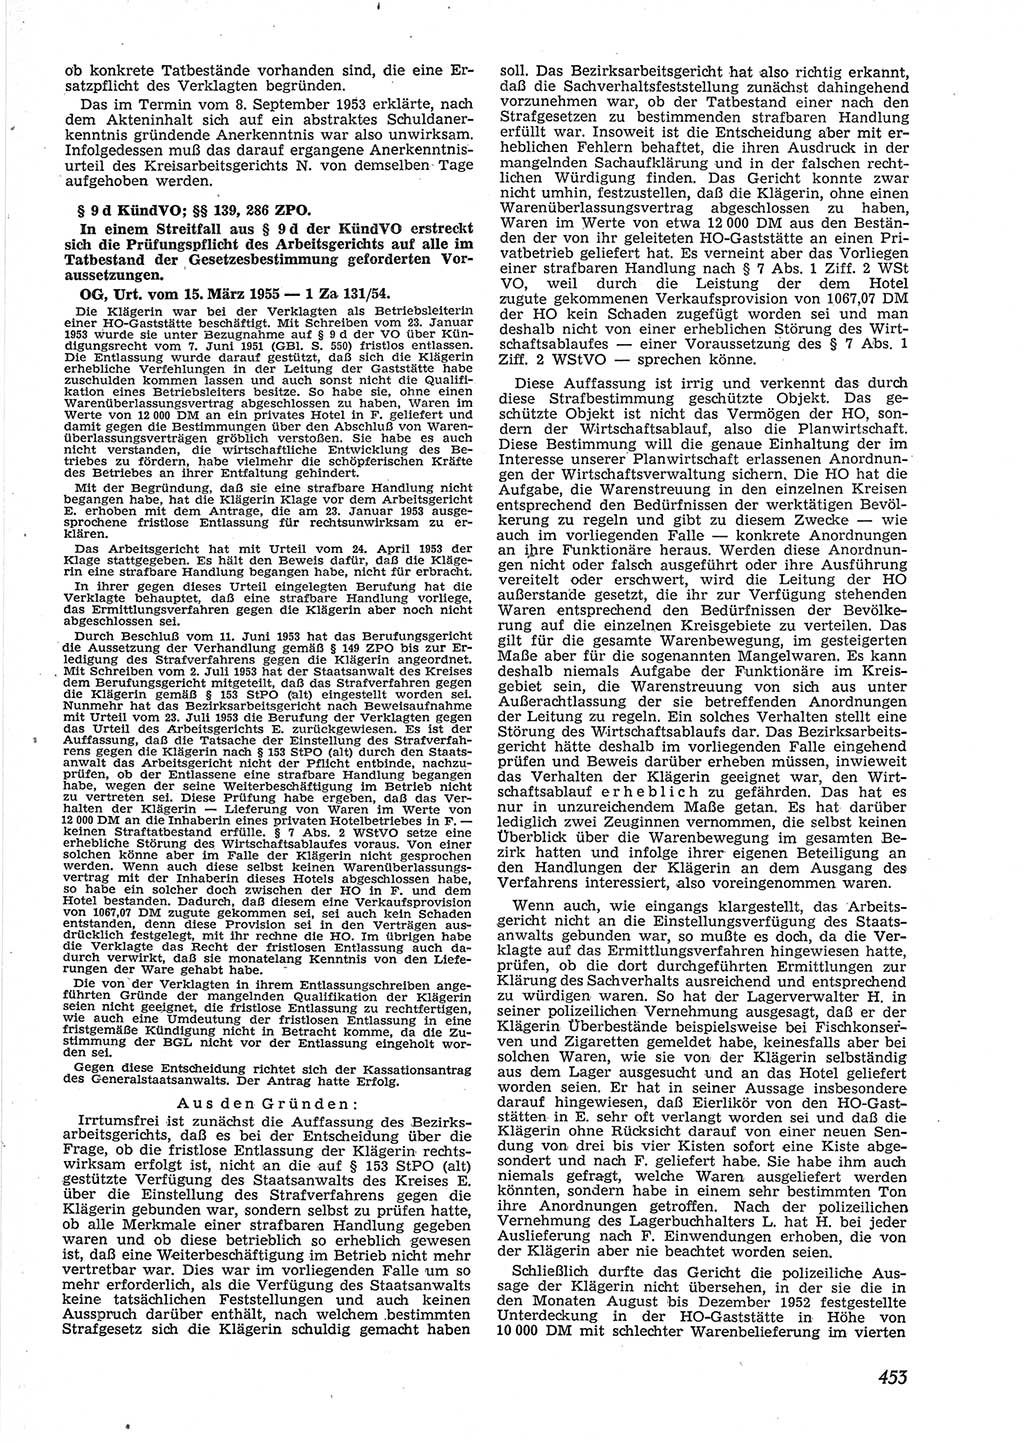 Neue Justiz (NJ), Zeitschrift für Recht und Rechtswissenschaft [Deutsche Demokratische Republik (DDR)], 9. Jahrgang 1955, Seite 453 (NJ DDR 1955, S. 453)